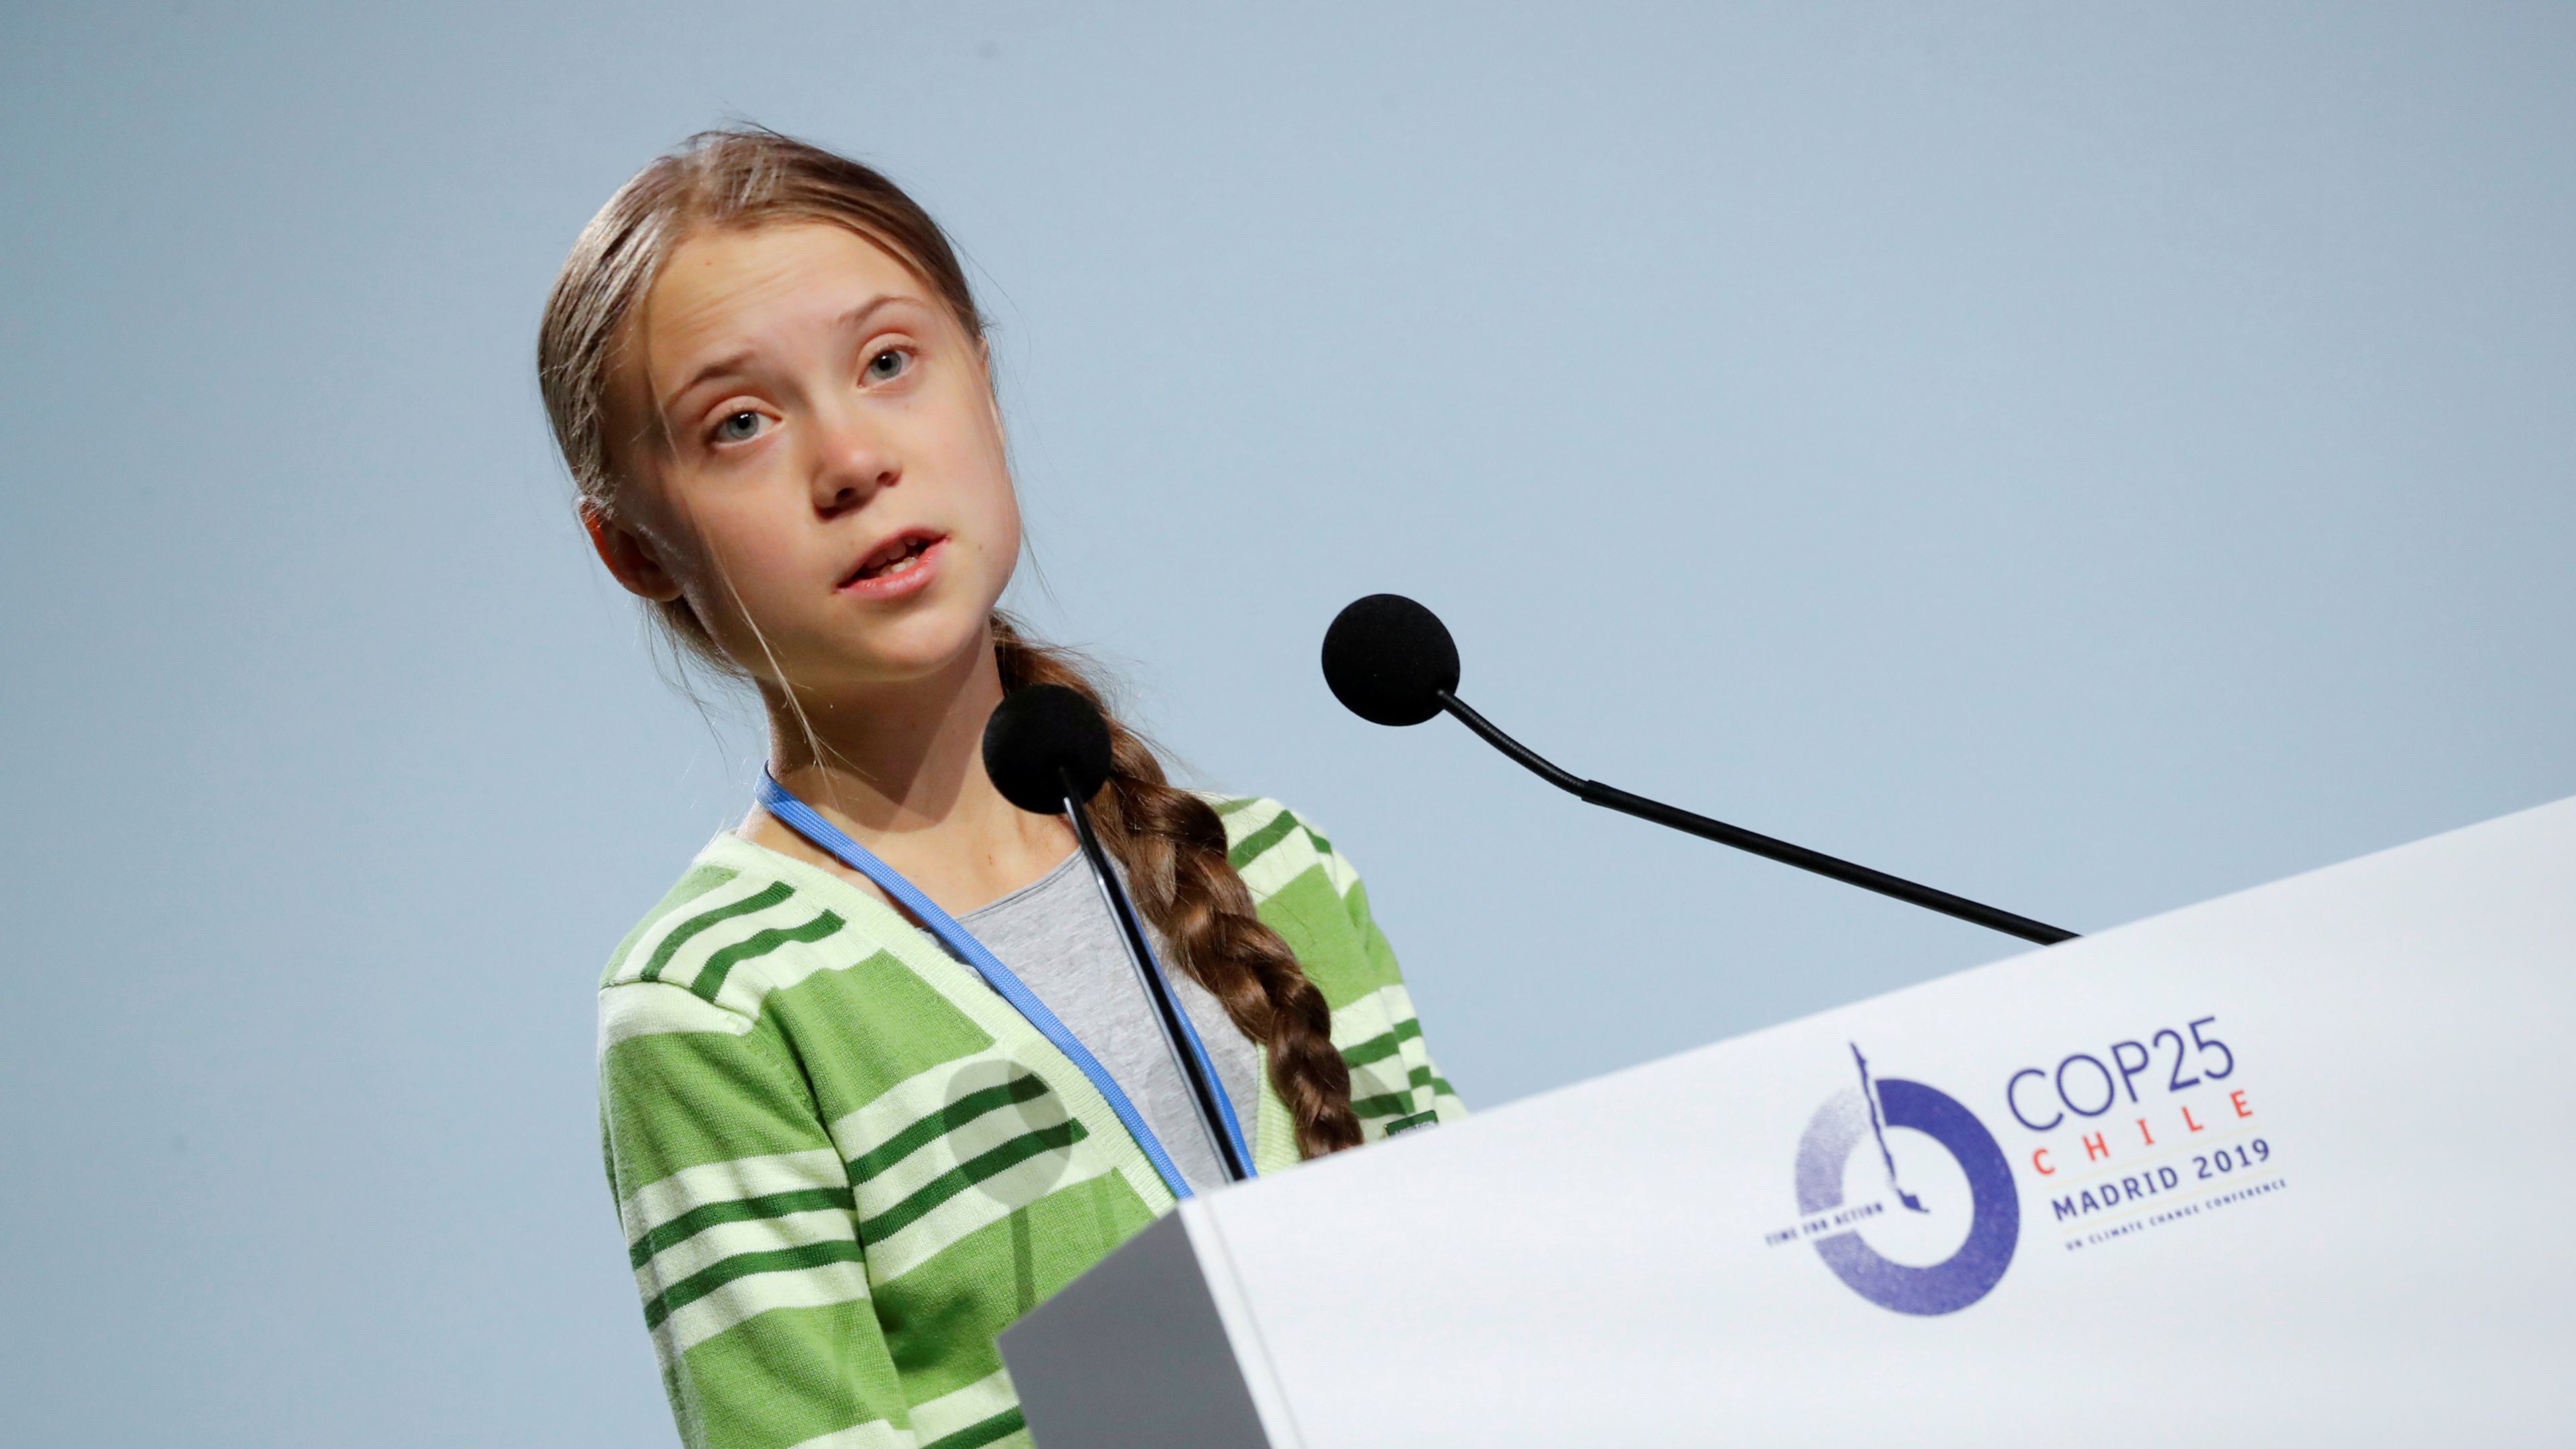 La activista sueca Greta Thunberg, durante su intervención en la Cumbre del Clima de Madrid.